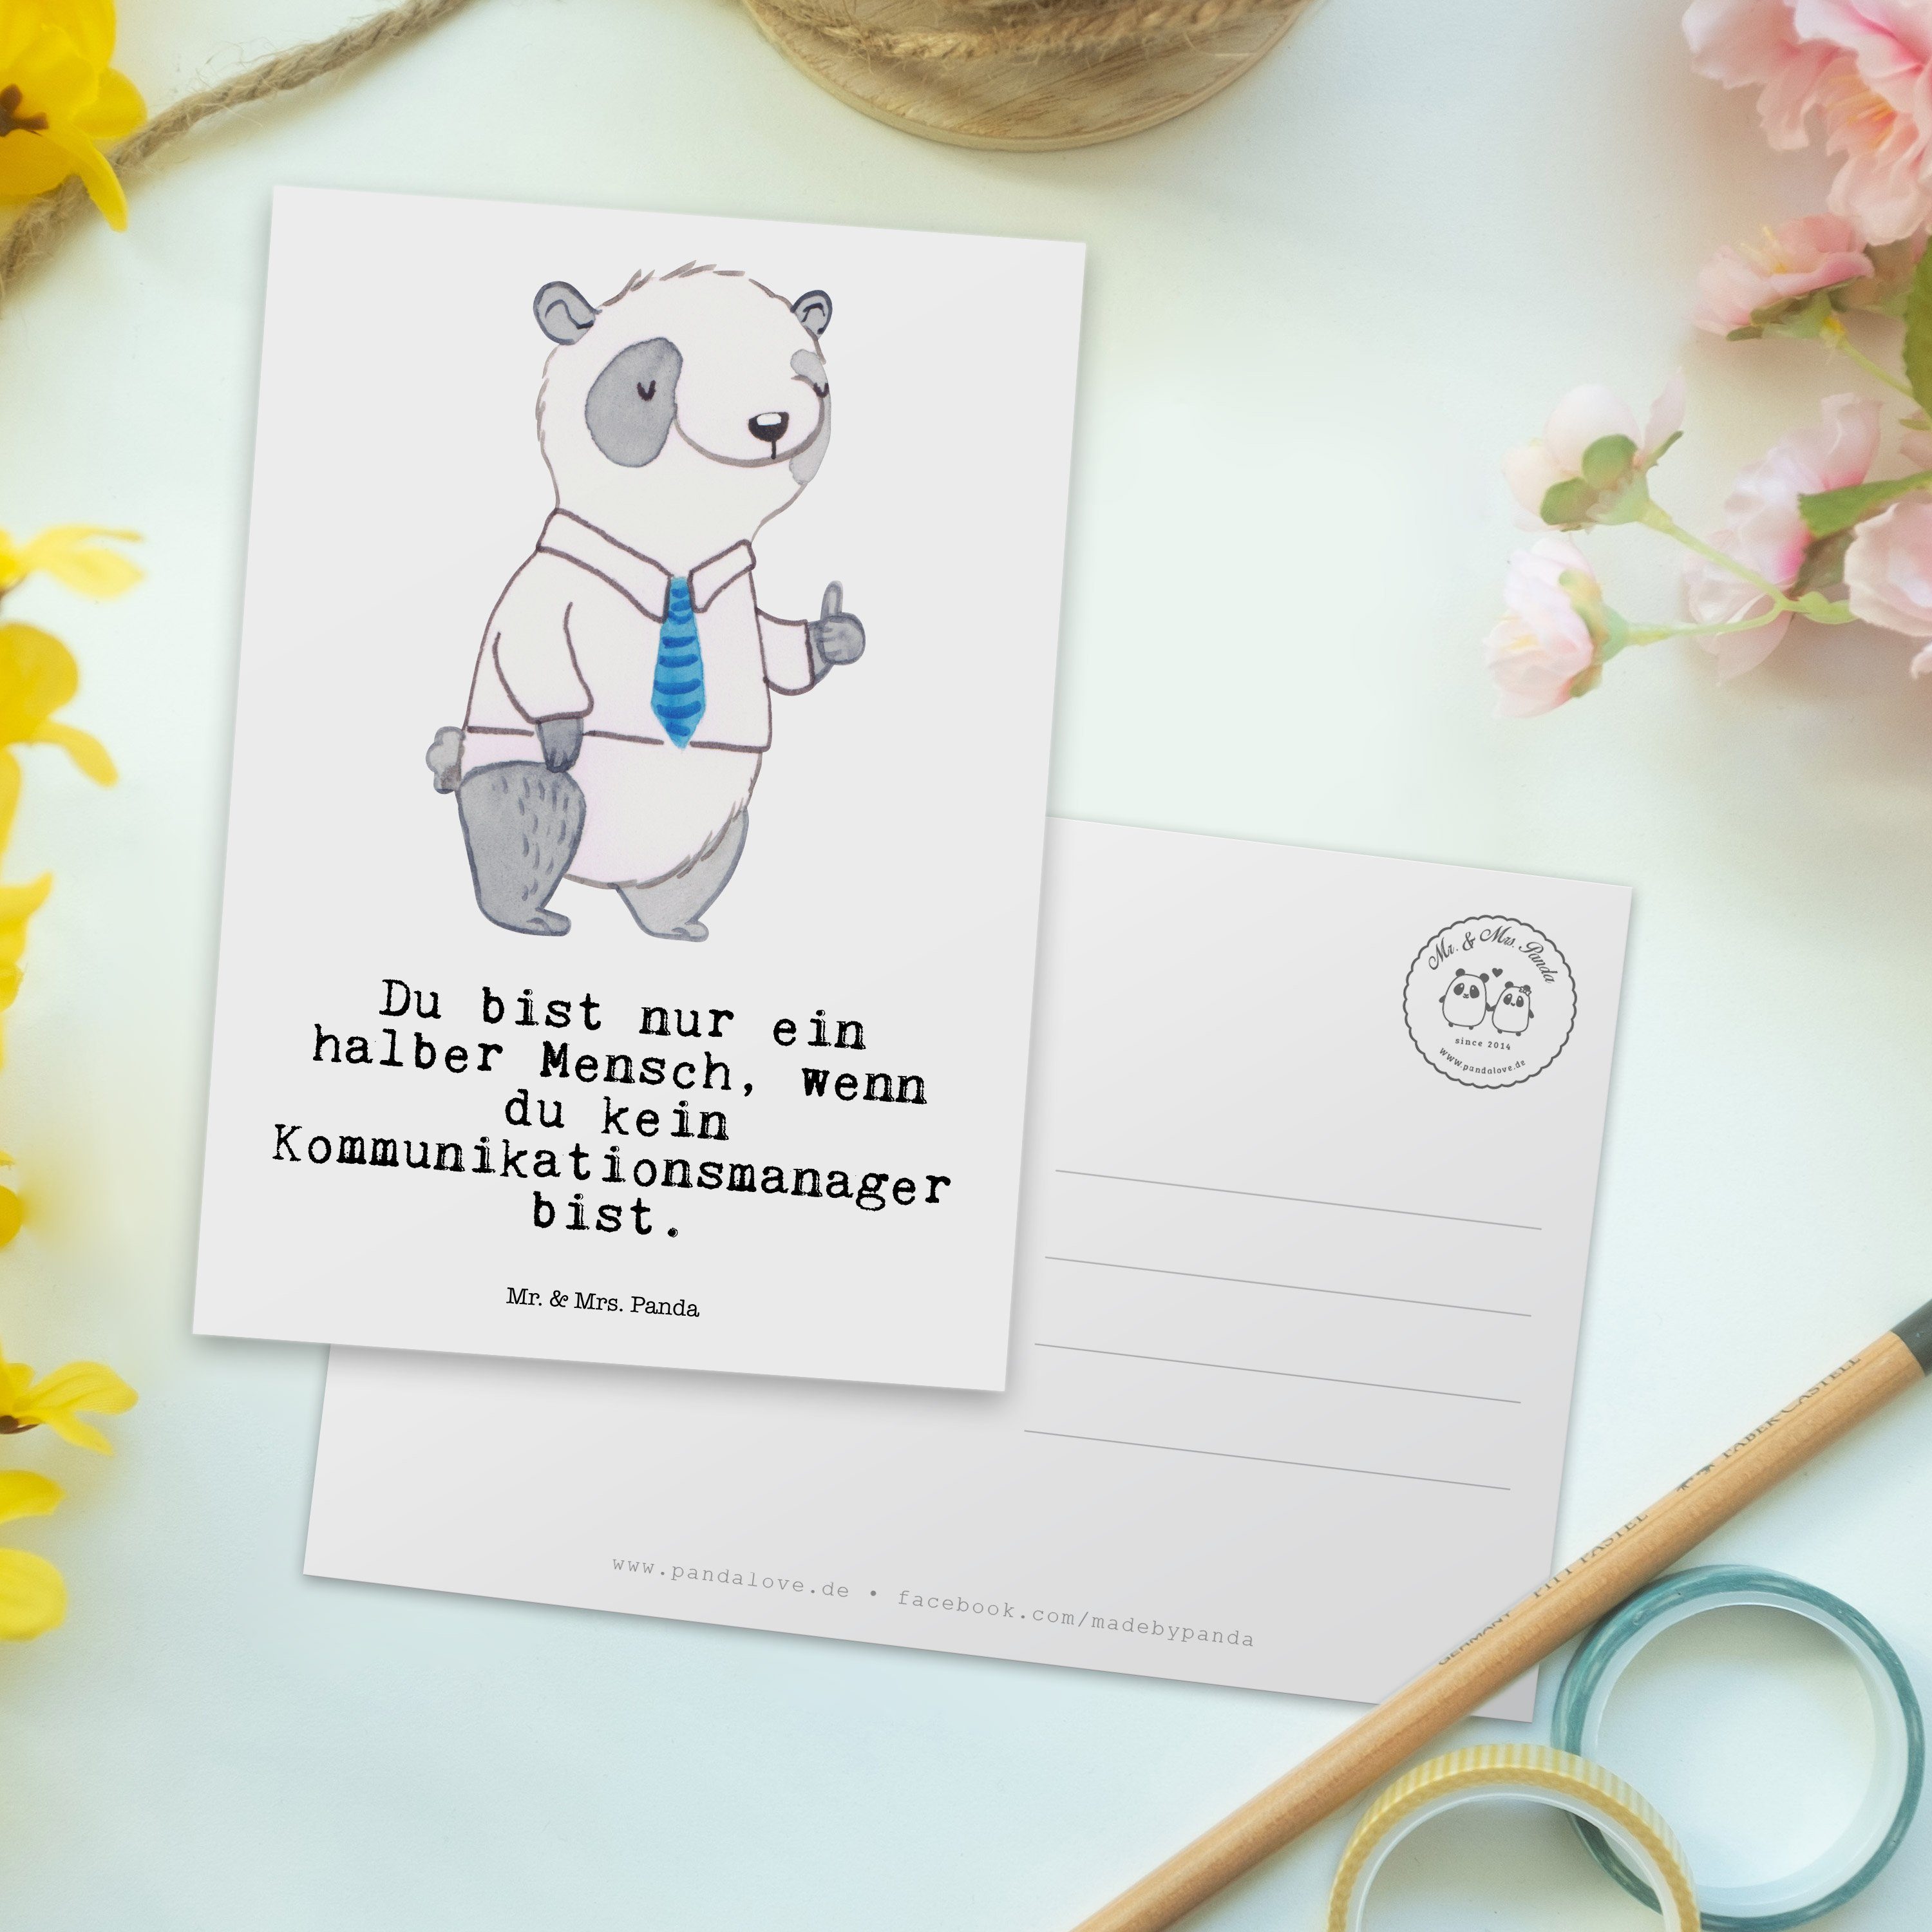 Herz - Panda communic - Mrs. Kommunikationsmanager Postkarte Geschenk, Grußkarte, mit Weiß & Mr.